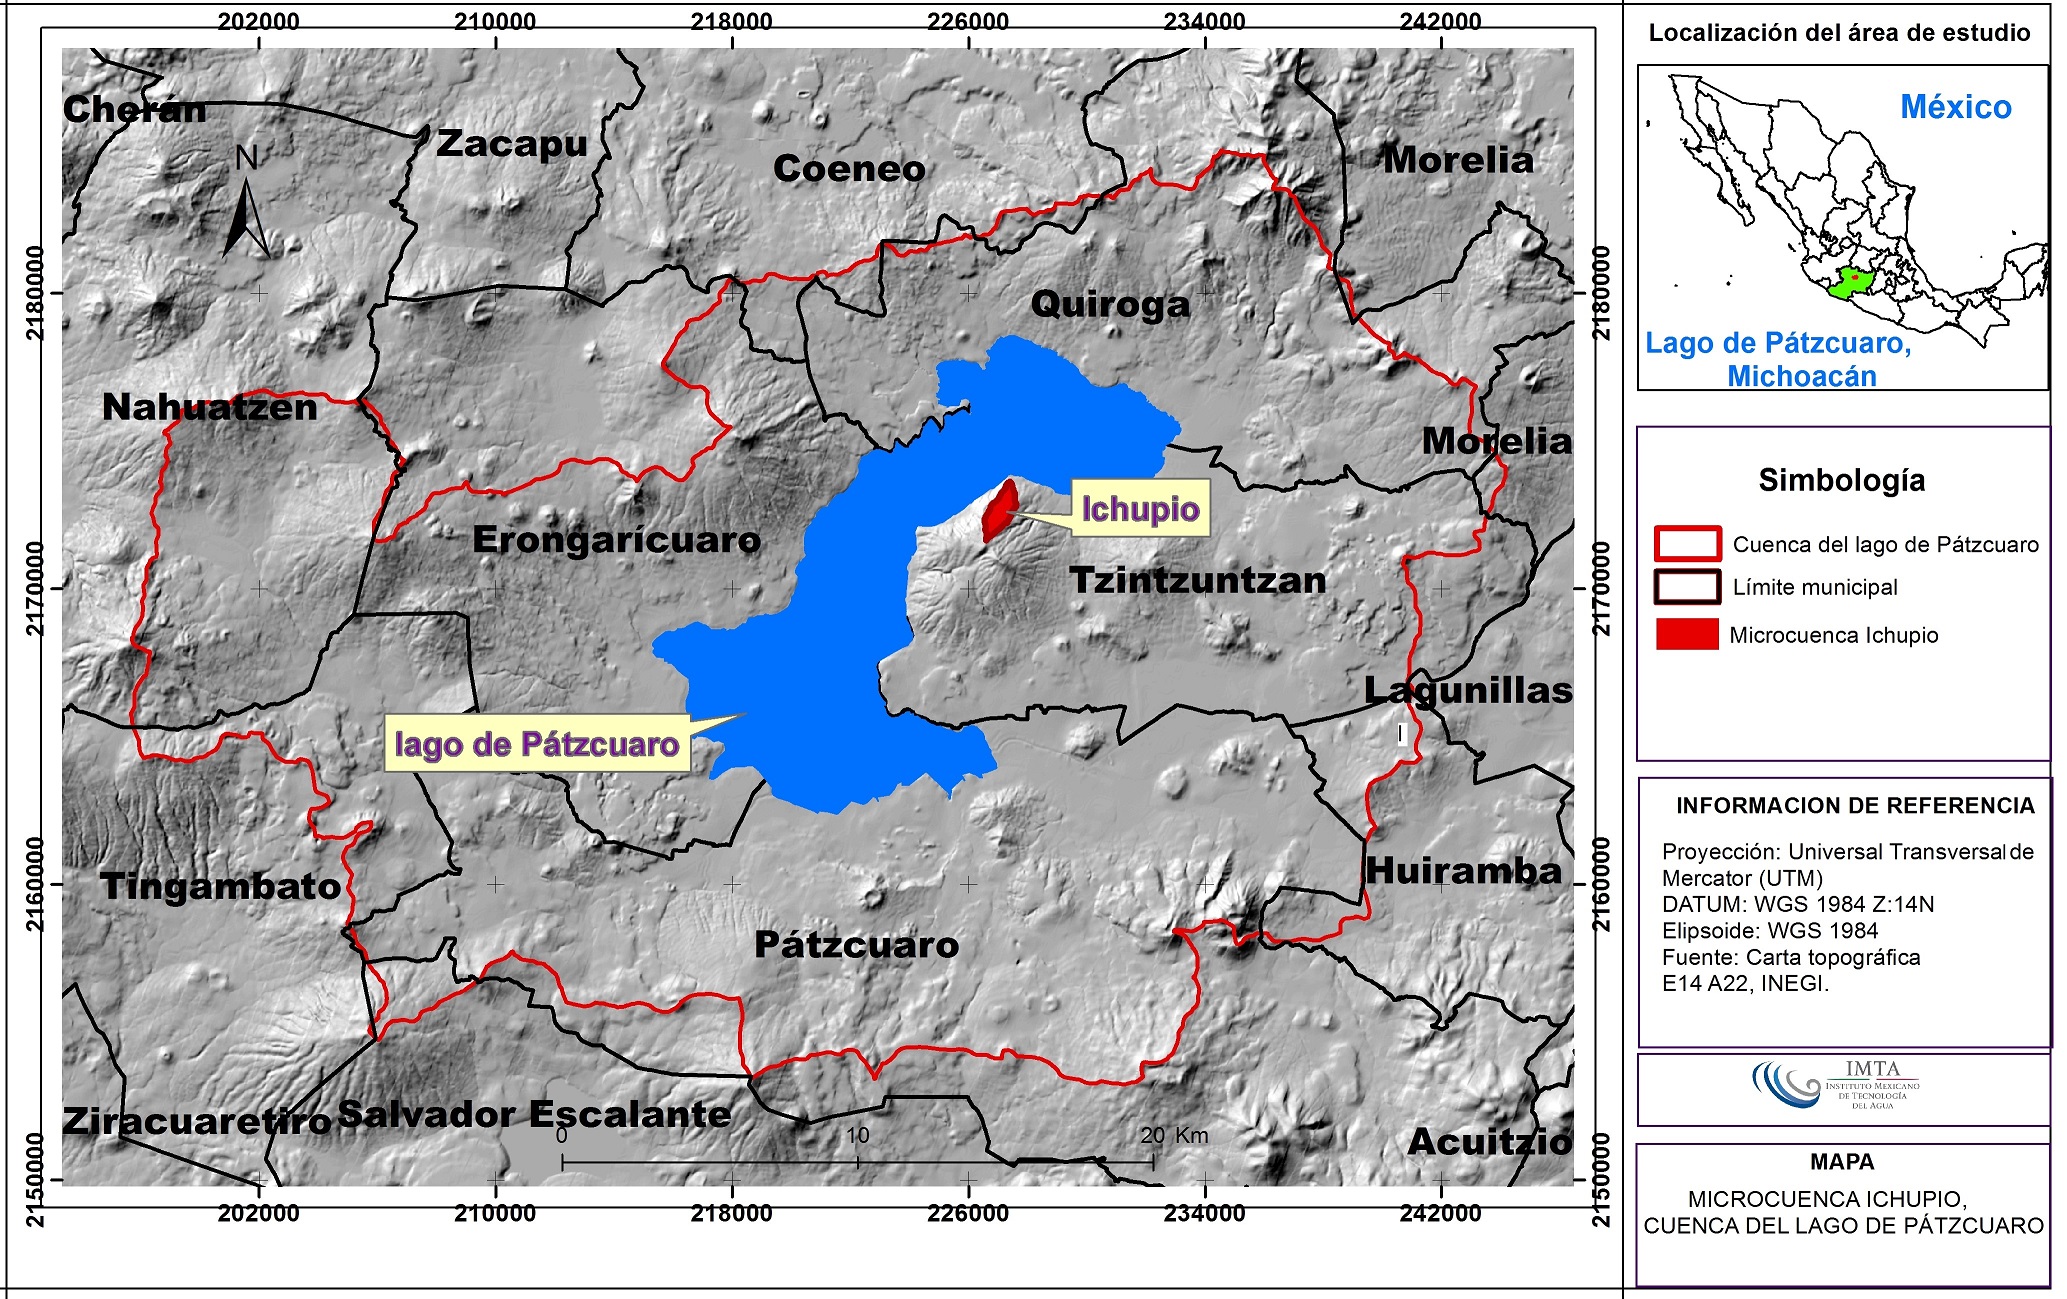 Localización de la microcuenca Ichupio, cuenca del lago de Pátzcuaro, Michoacán.